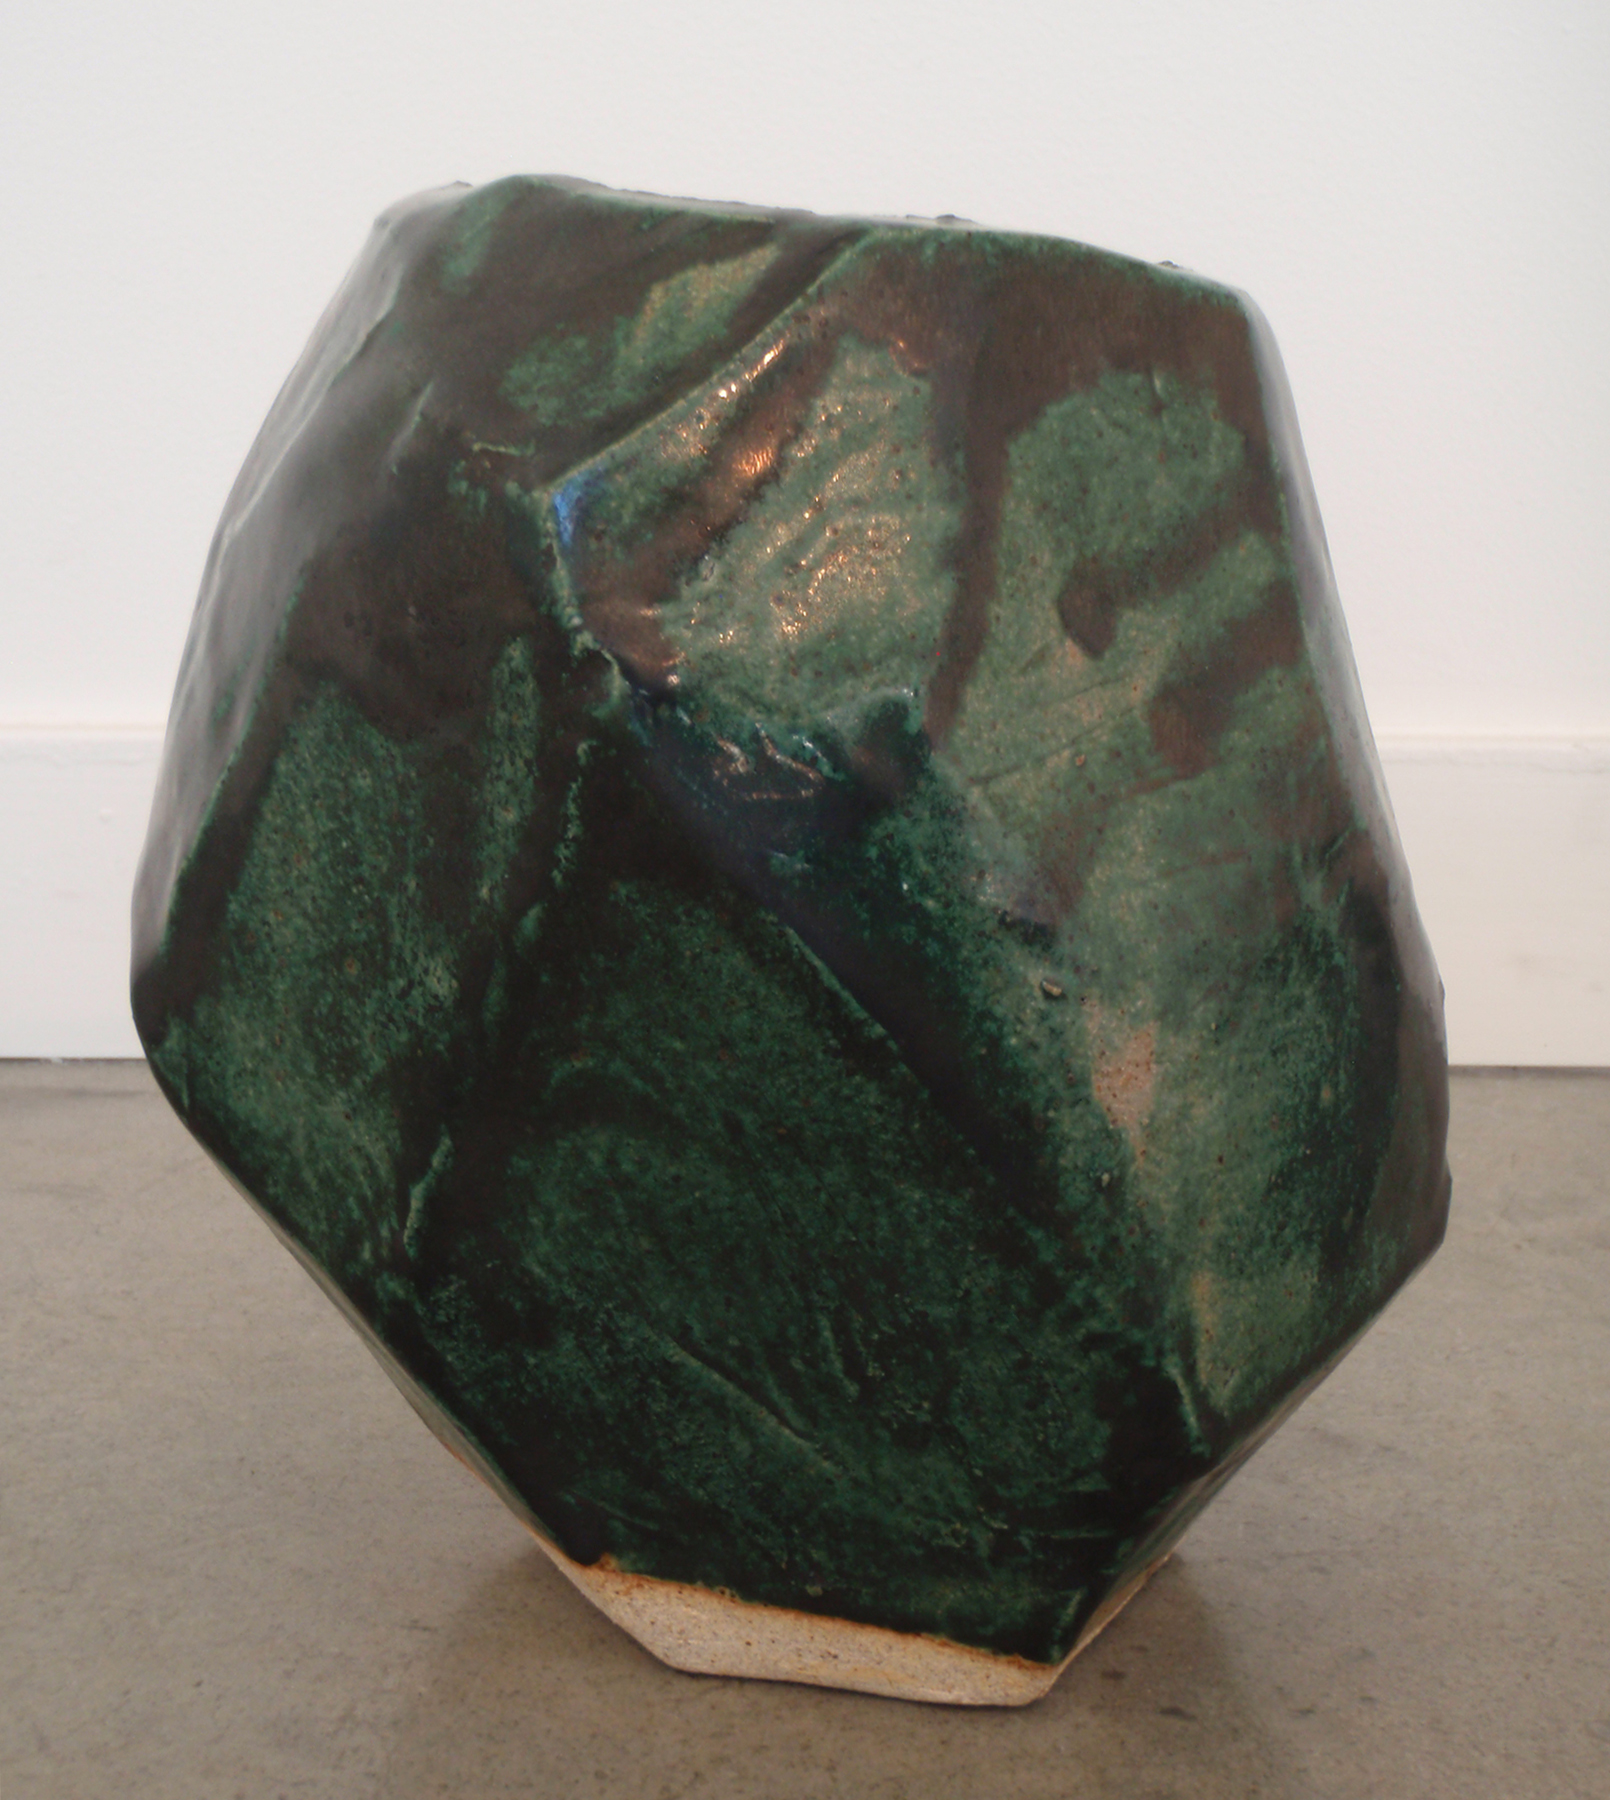   ANNA SEW HOY   verte/noir , fired stoneware, 8" x 7.5" x 6.5", 2012 